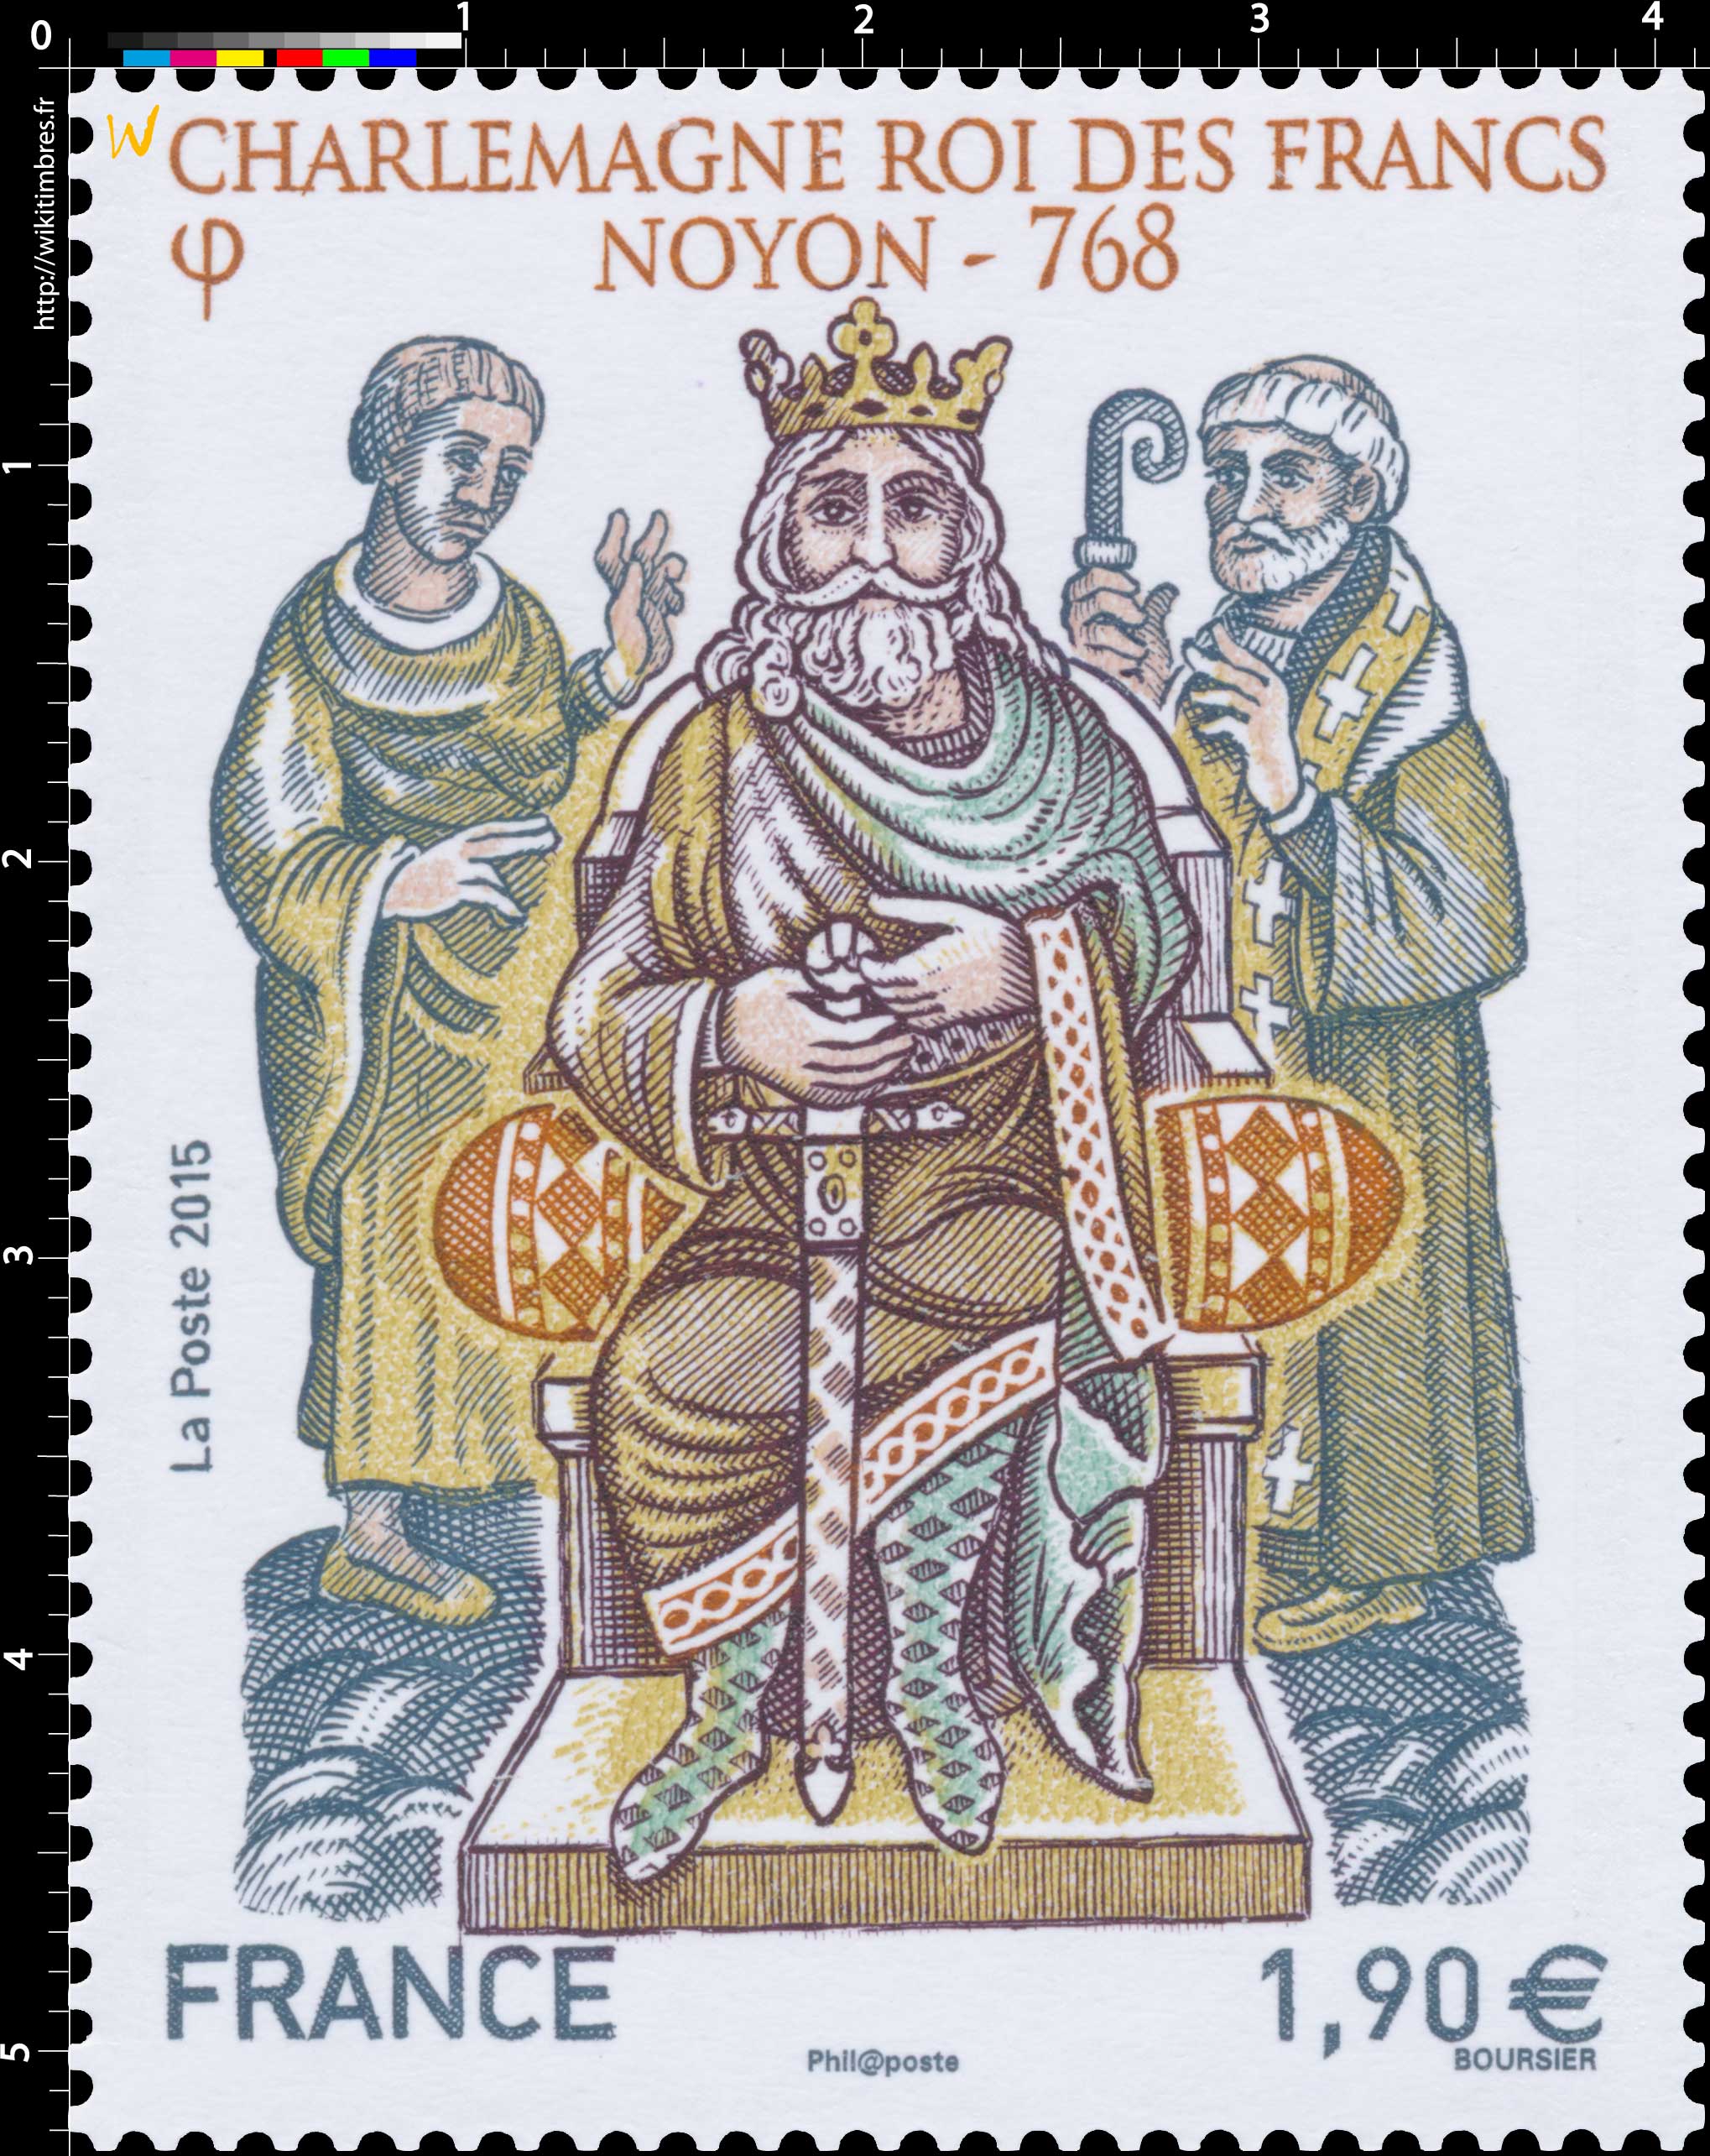 2015 Charlemagne roi des francs Noyon - 768